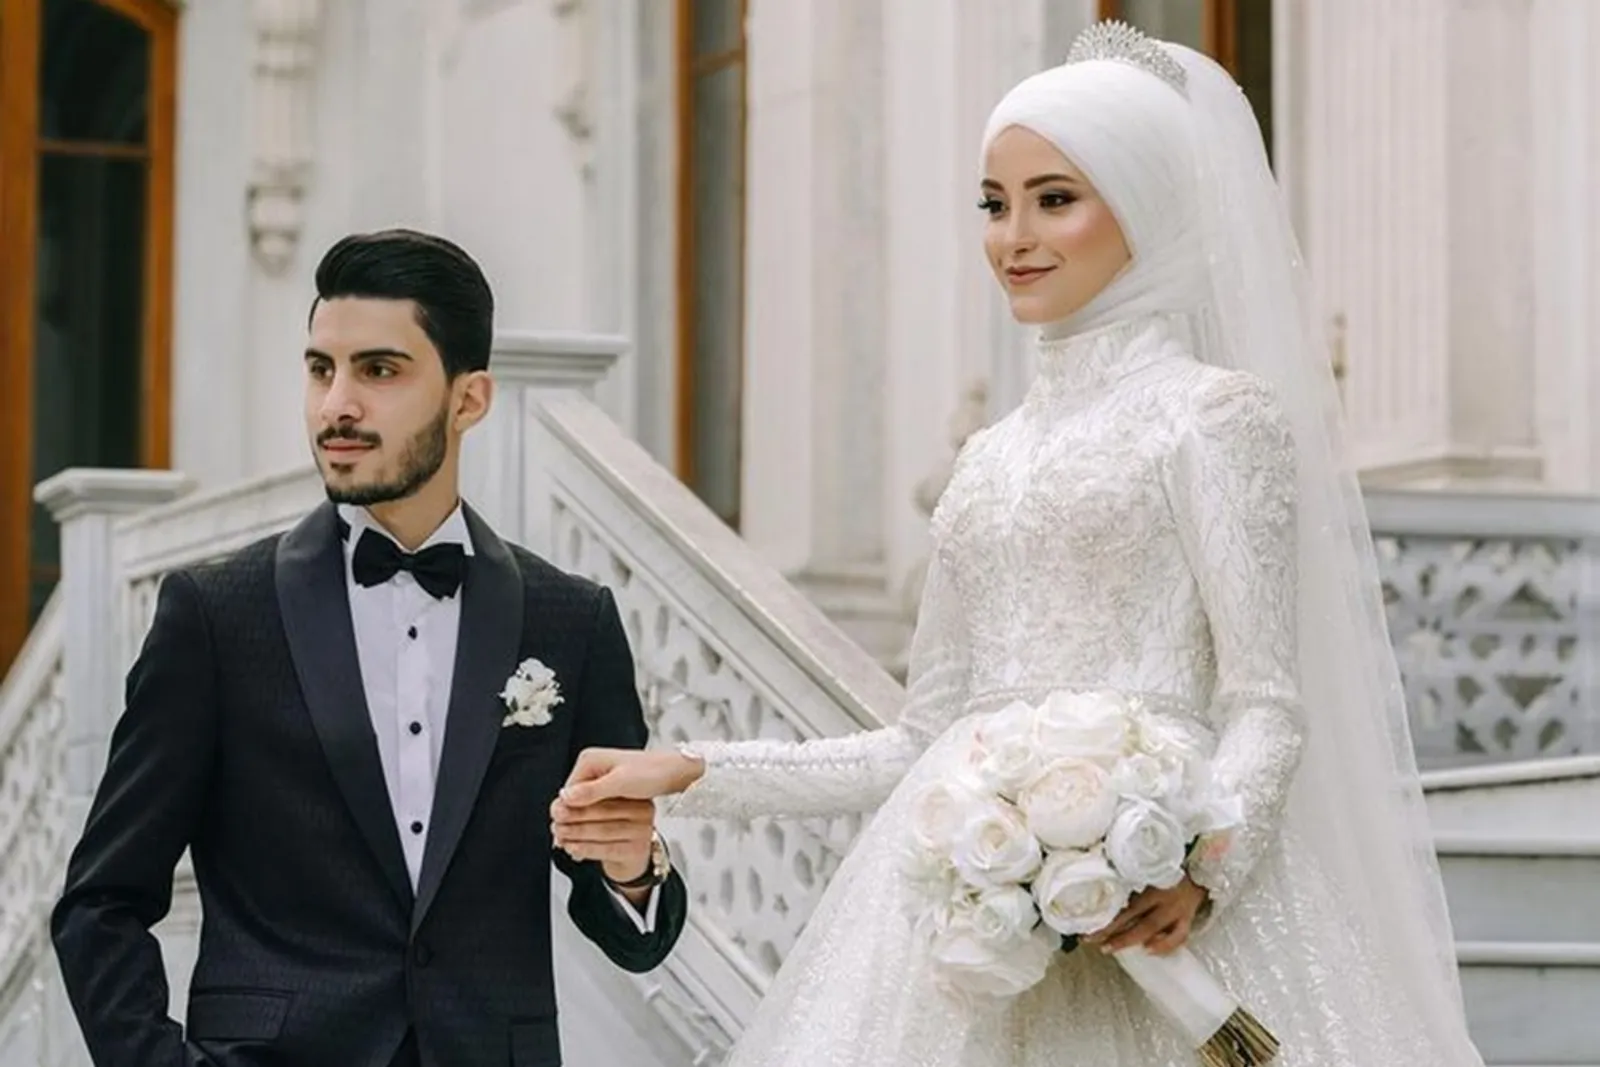 Makna Pernikahan dalam Islam bagi Seorang Perempuan